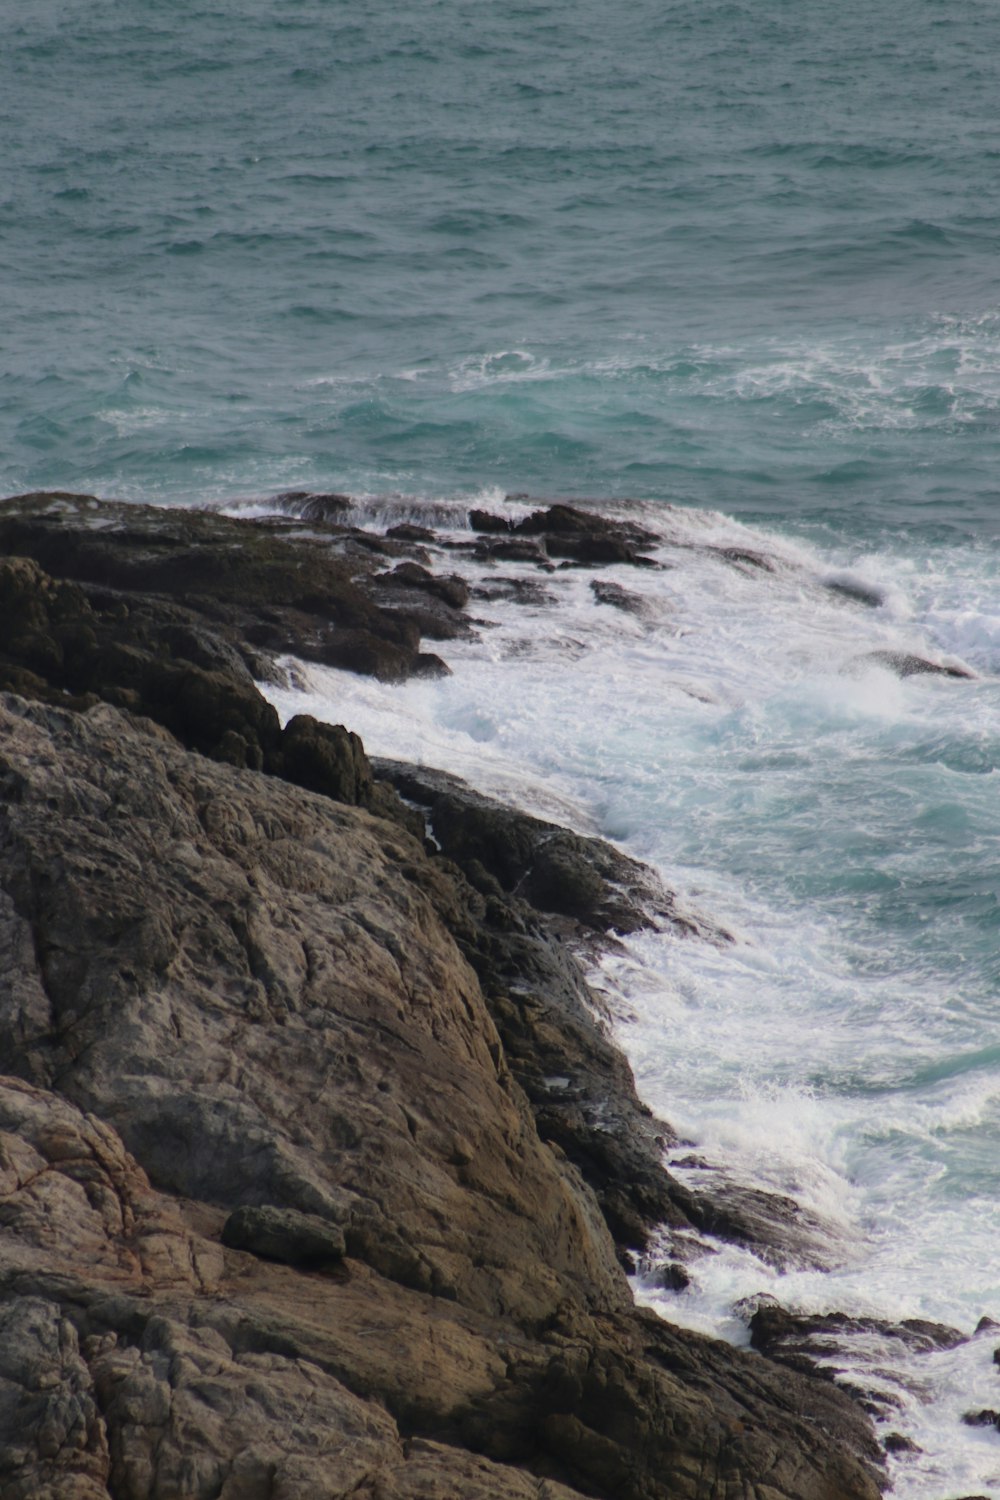 Costa rocosa marrón con olas del océano rompiendo en la costa durante el día